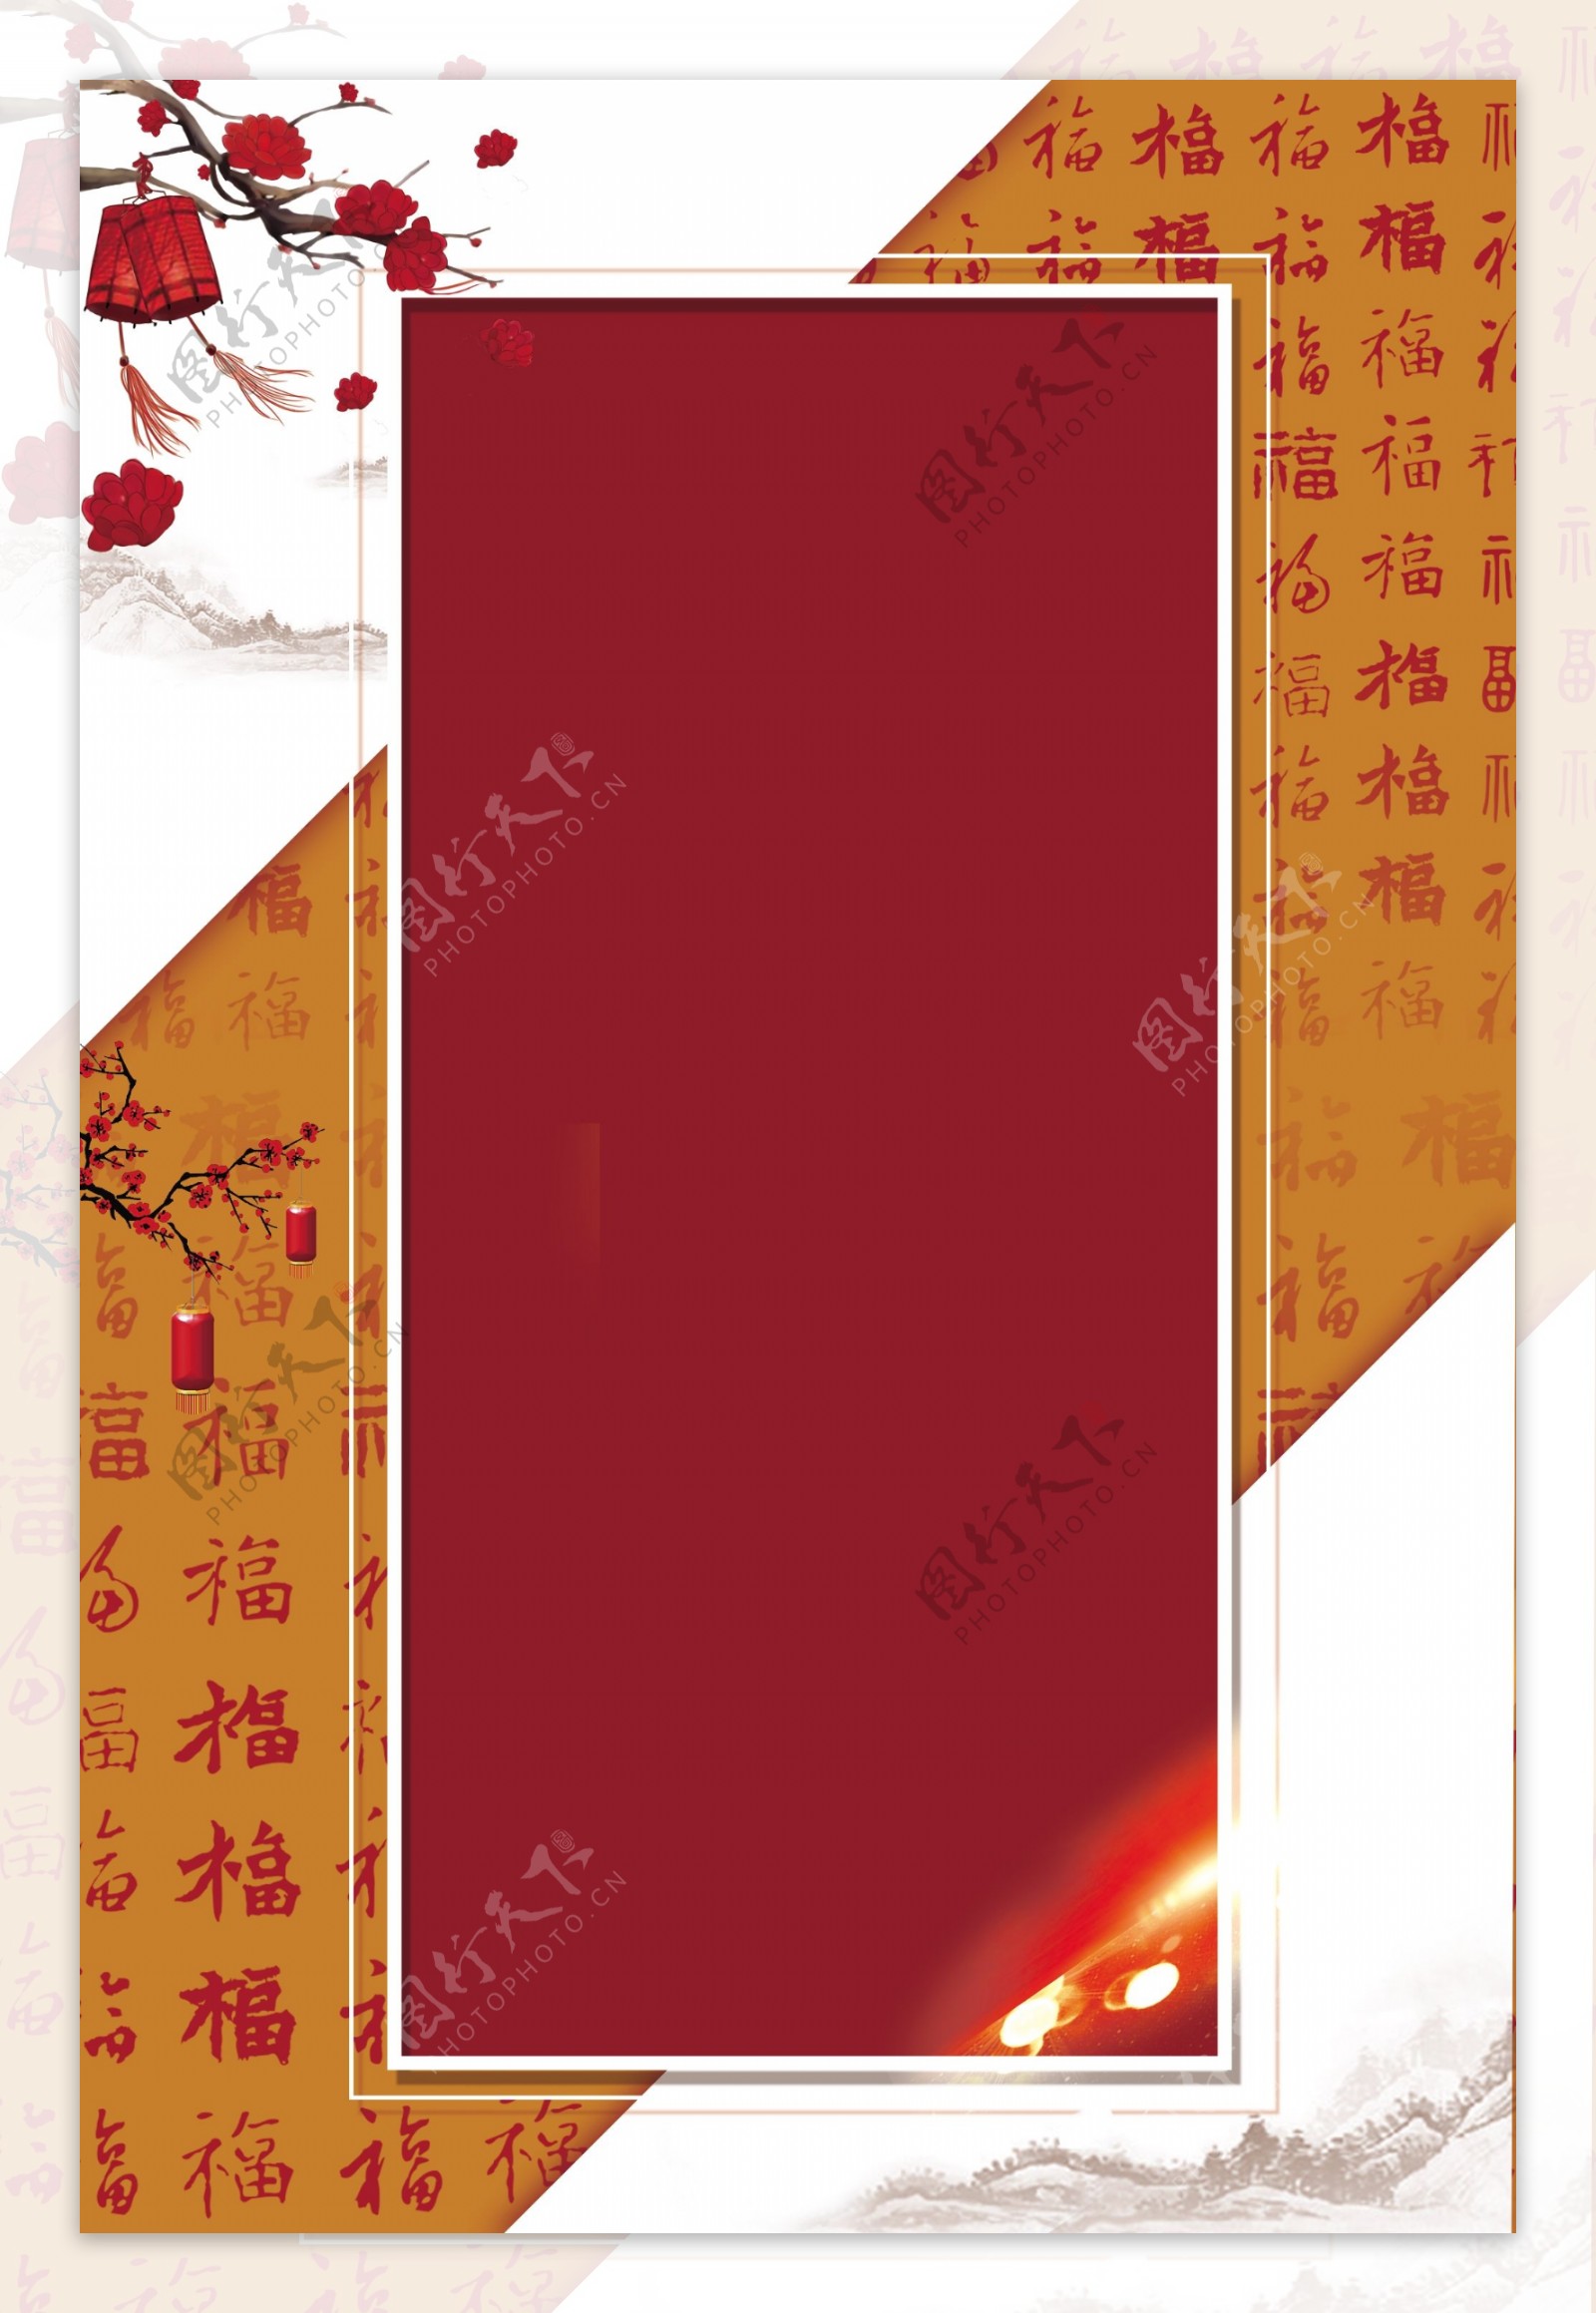 大年三十新春元旦红色传统节日广告背景